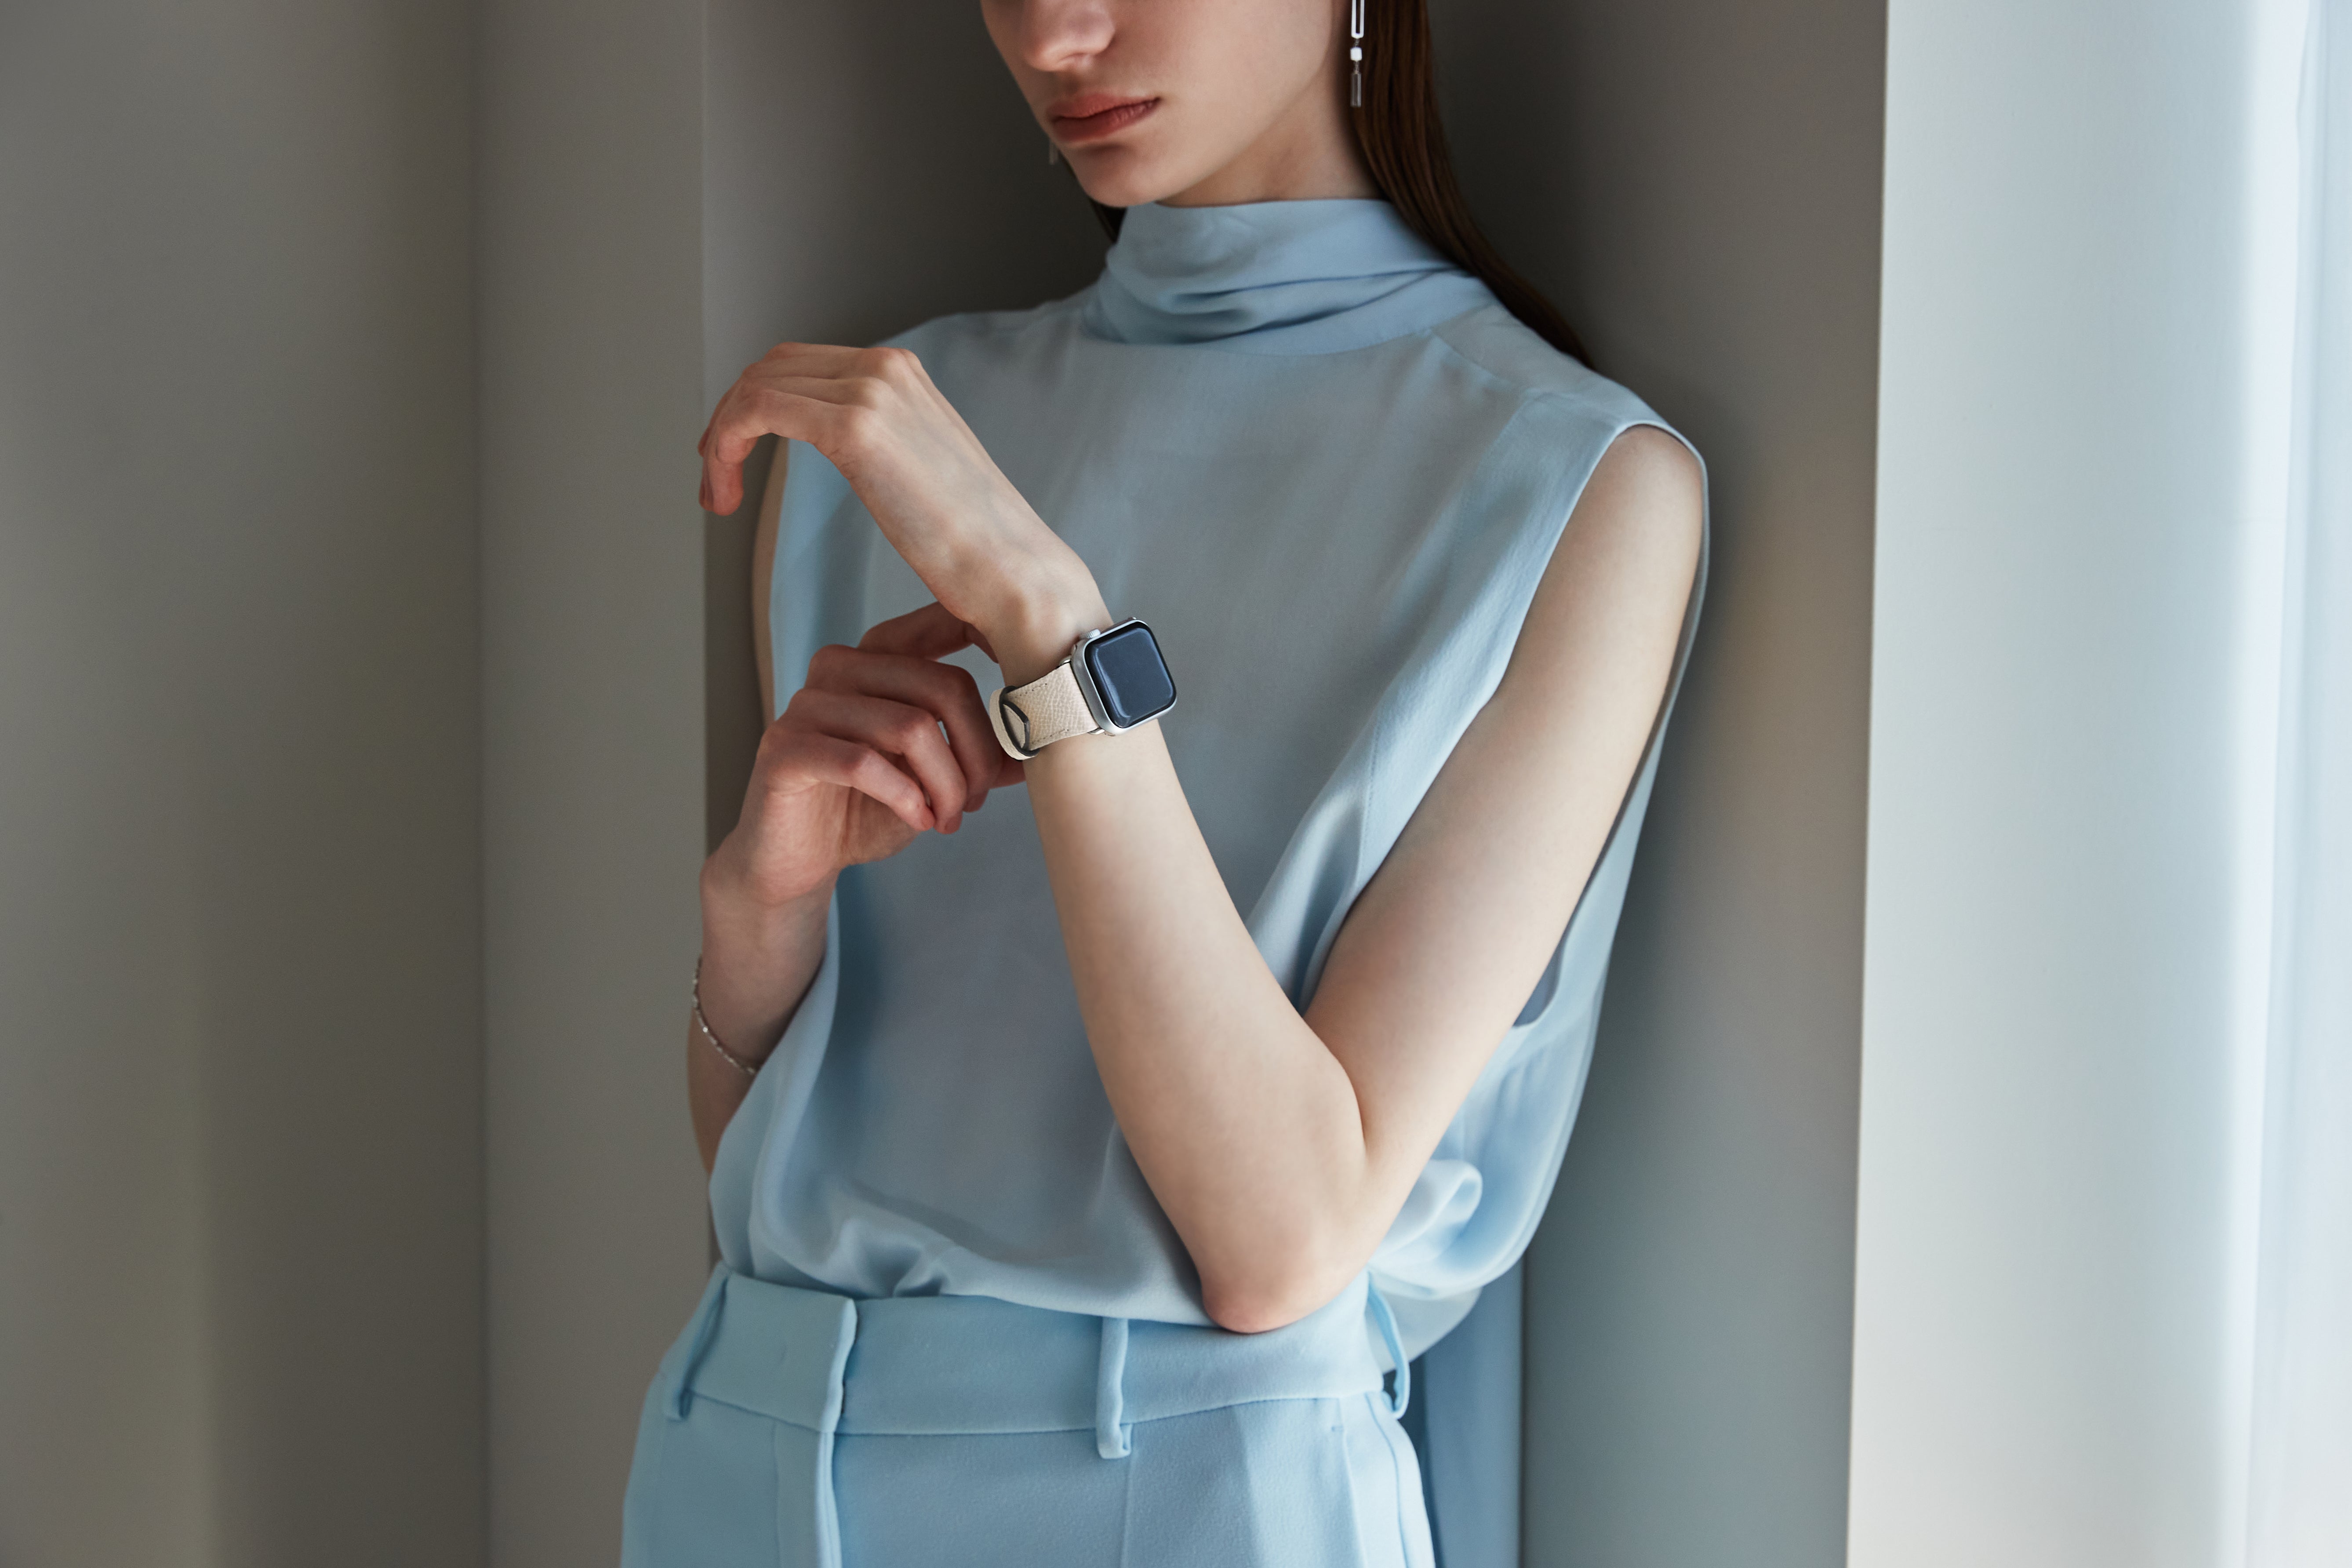 Μια κομψή γυναίκα με το δερμάτινο λουράκι του Apple Watch της από την BONAVENTURA.